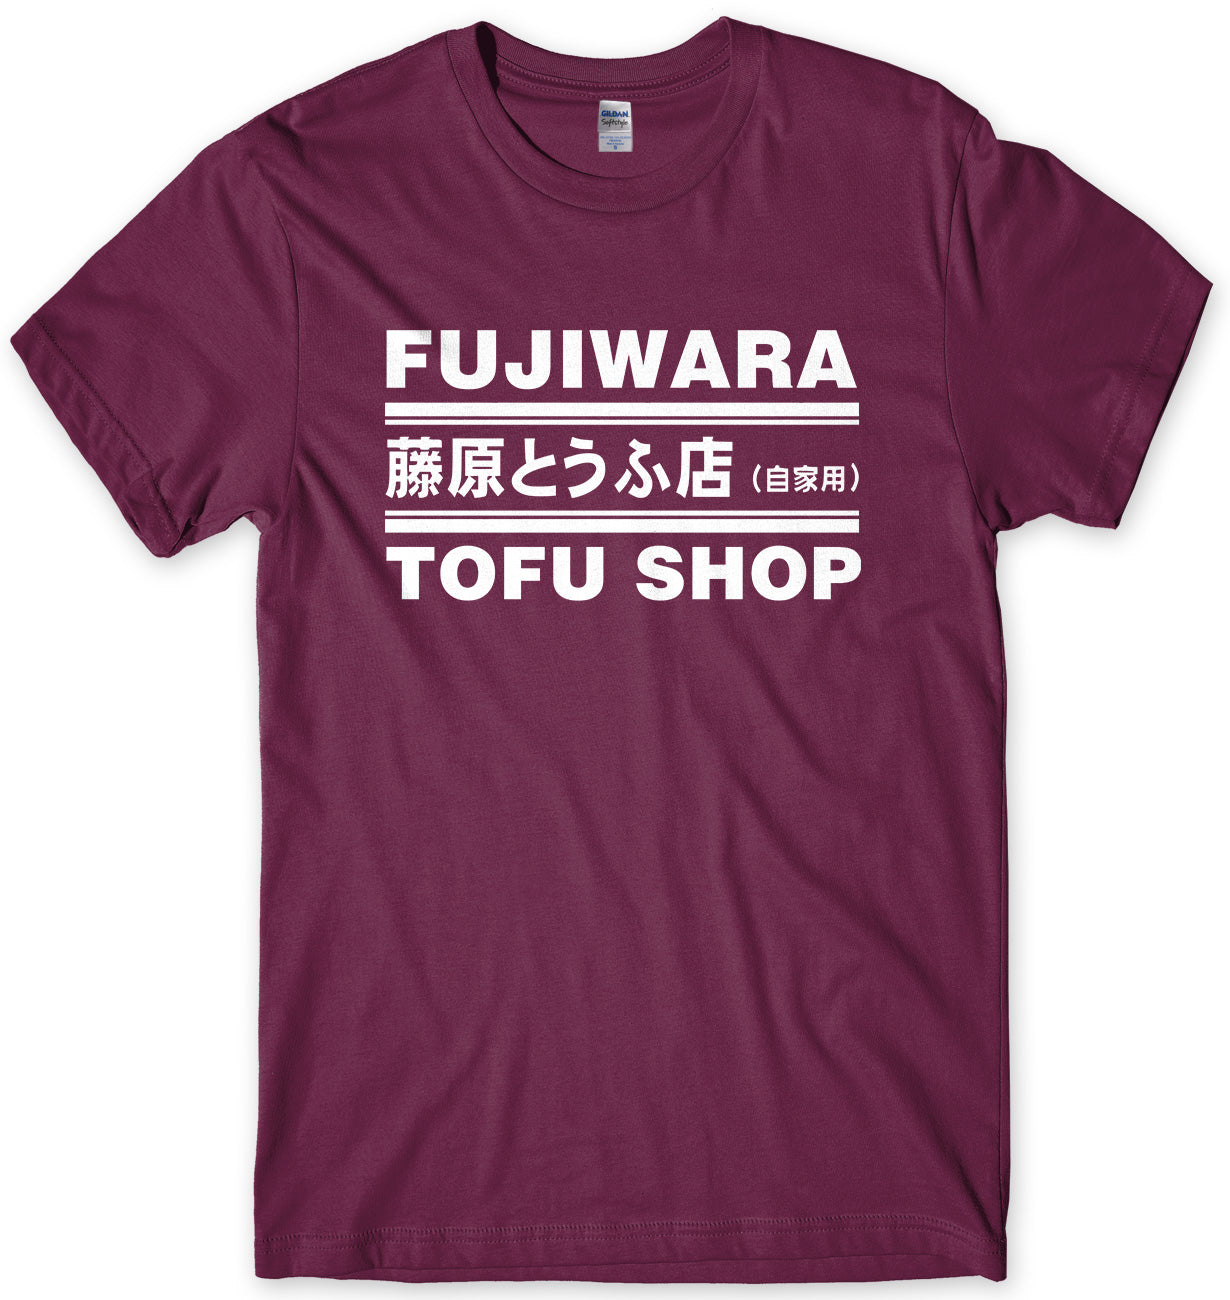 FUJIWARA TOFU SHOP - INITIAL D MENS UNISEX T-SHIRT